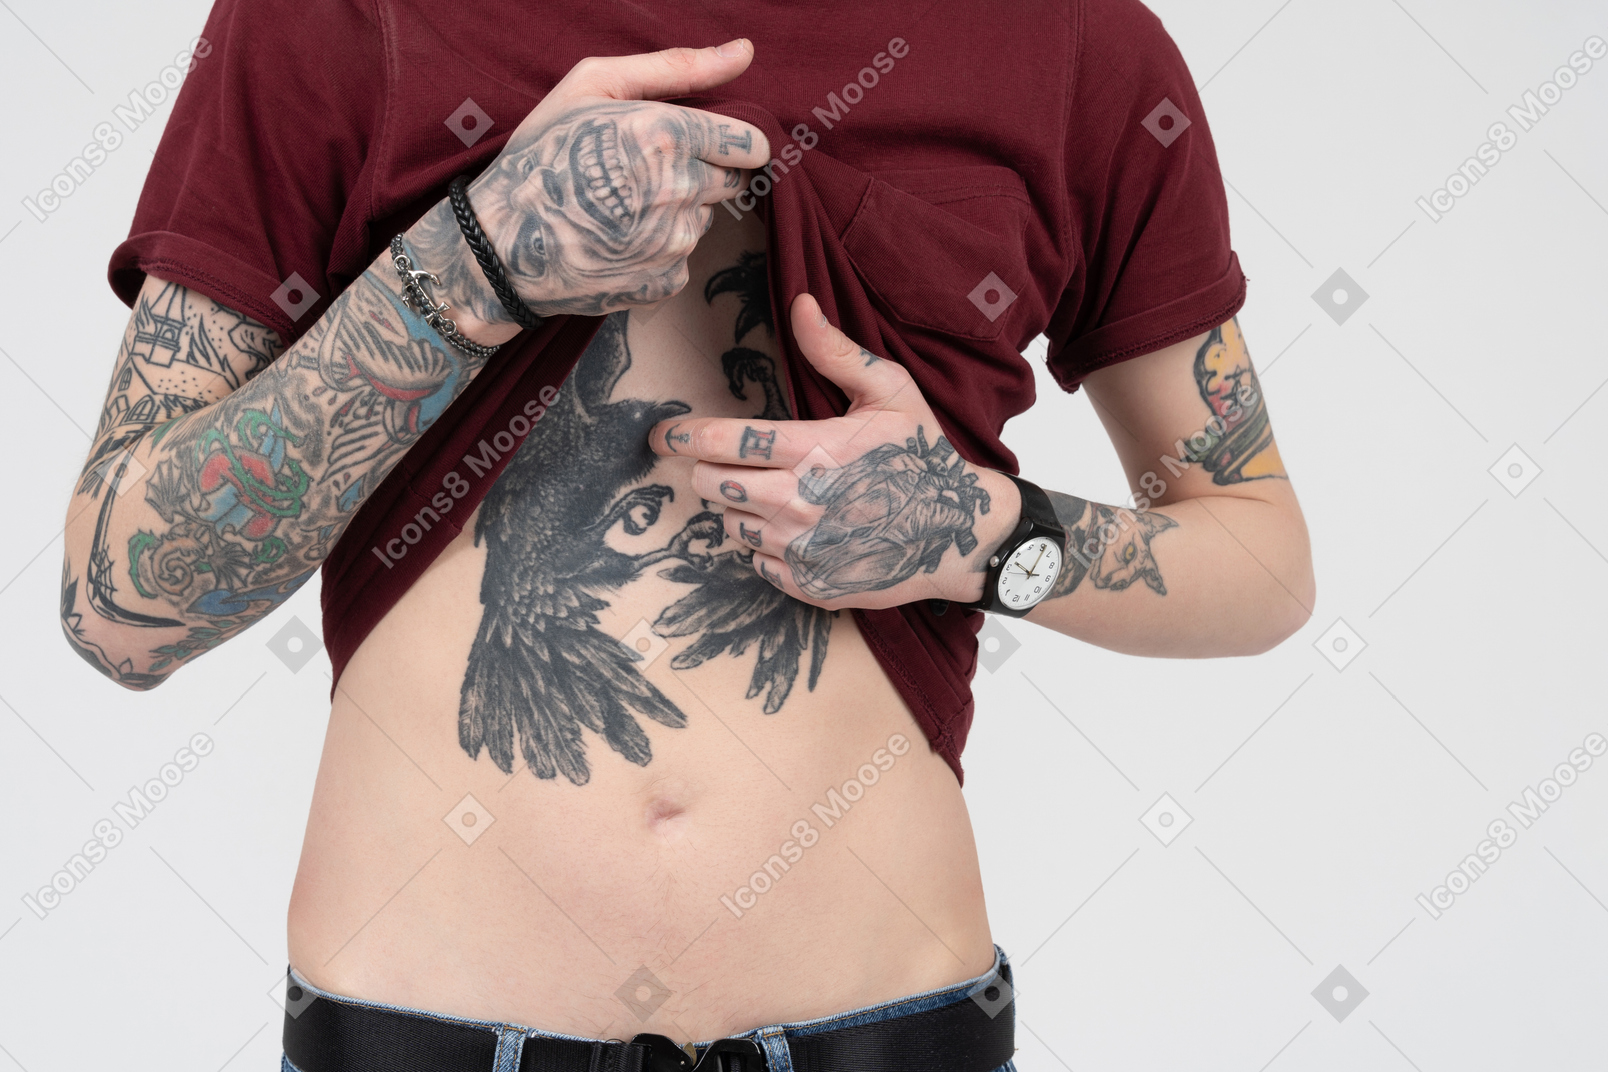 Parte superiore del corpo maschile con tatuaggi